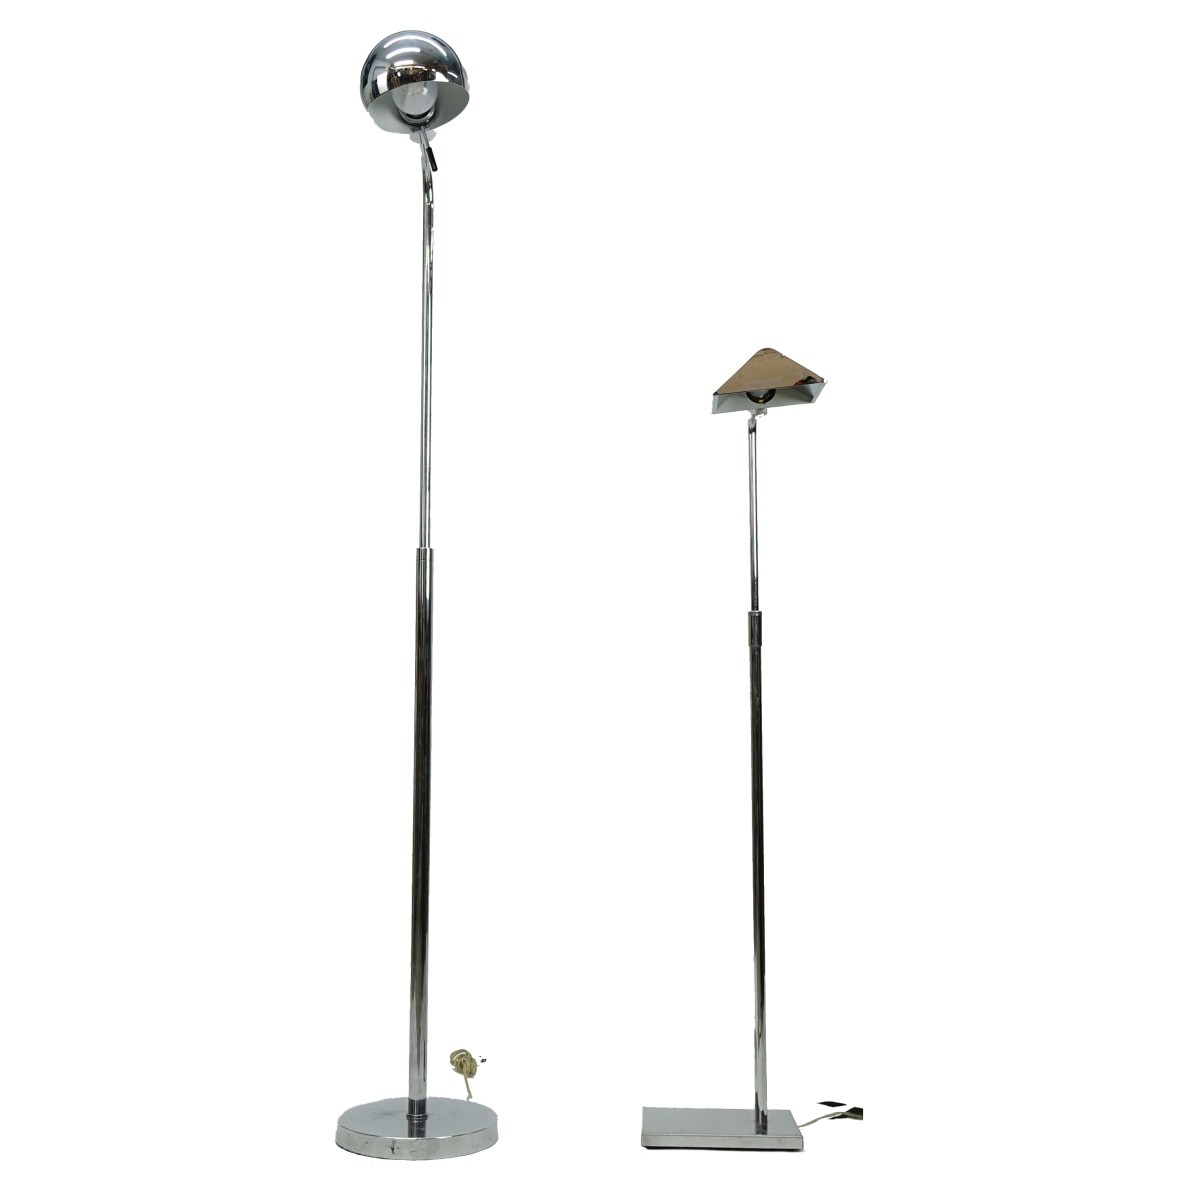 Two (2) Modern Chrome Floor Lamps